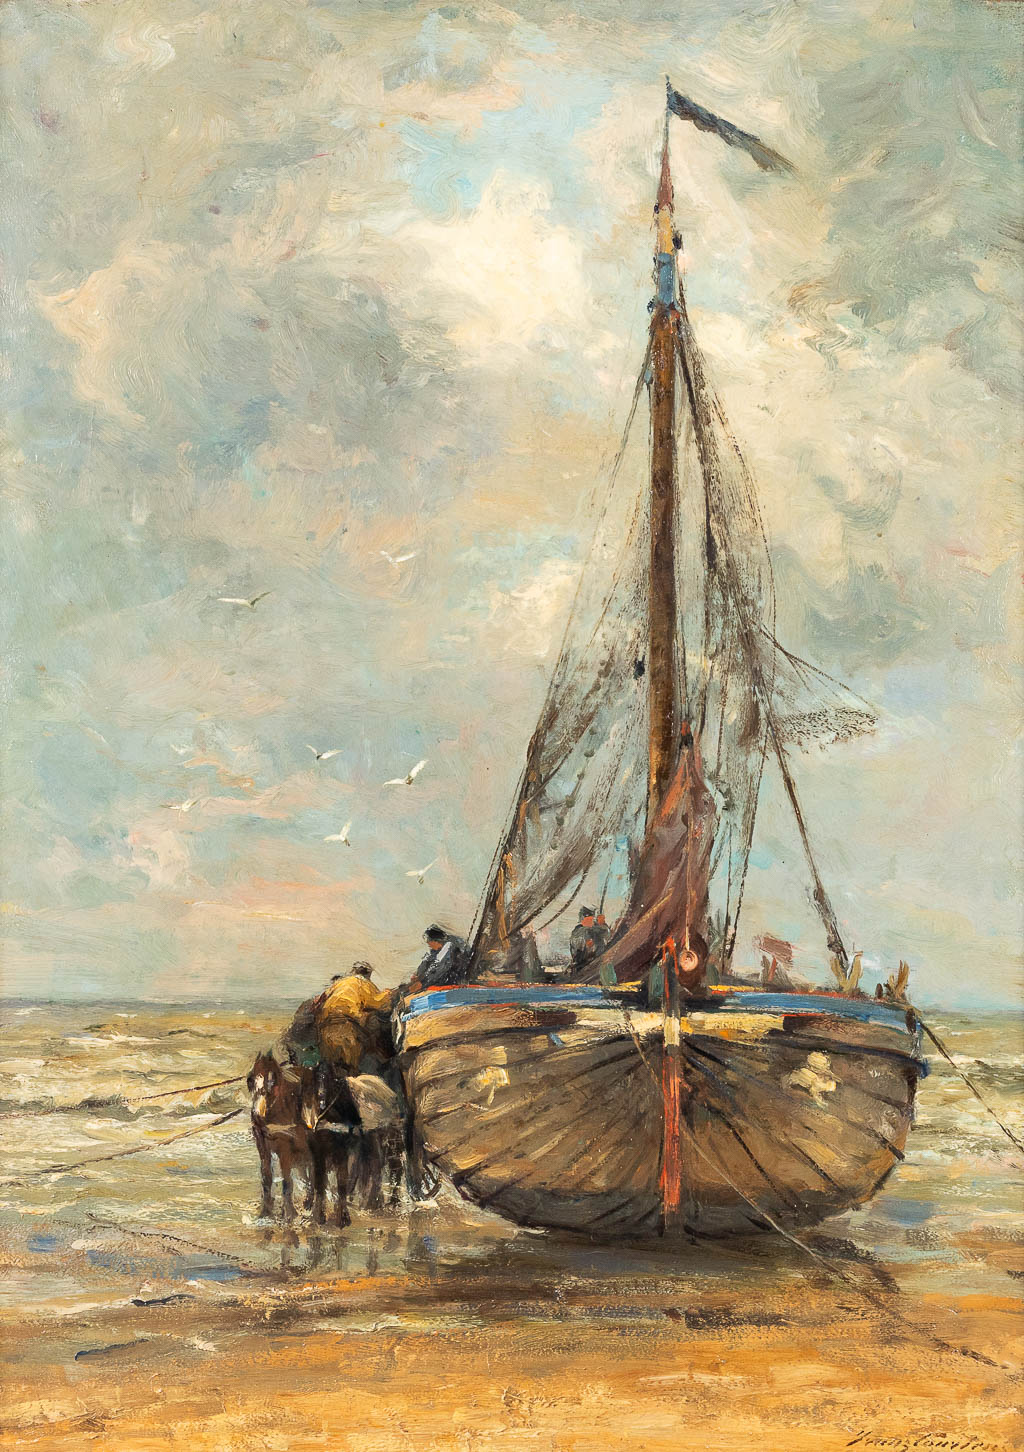 Franz COURTENS (1854-1943) 'Bateau de pêche à la côte' oil on canvas. (W: 84 x H: 117 cm)